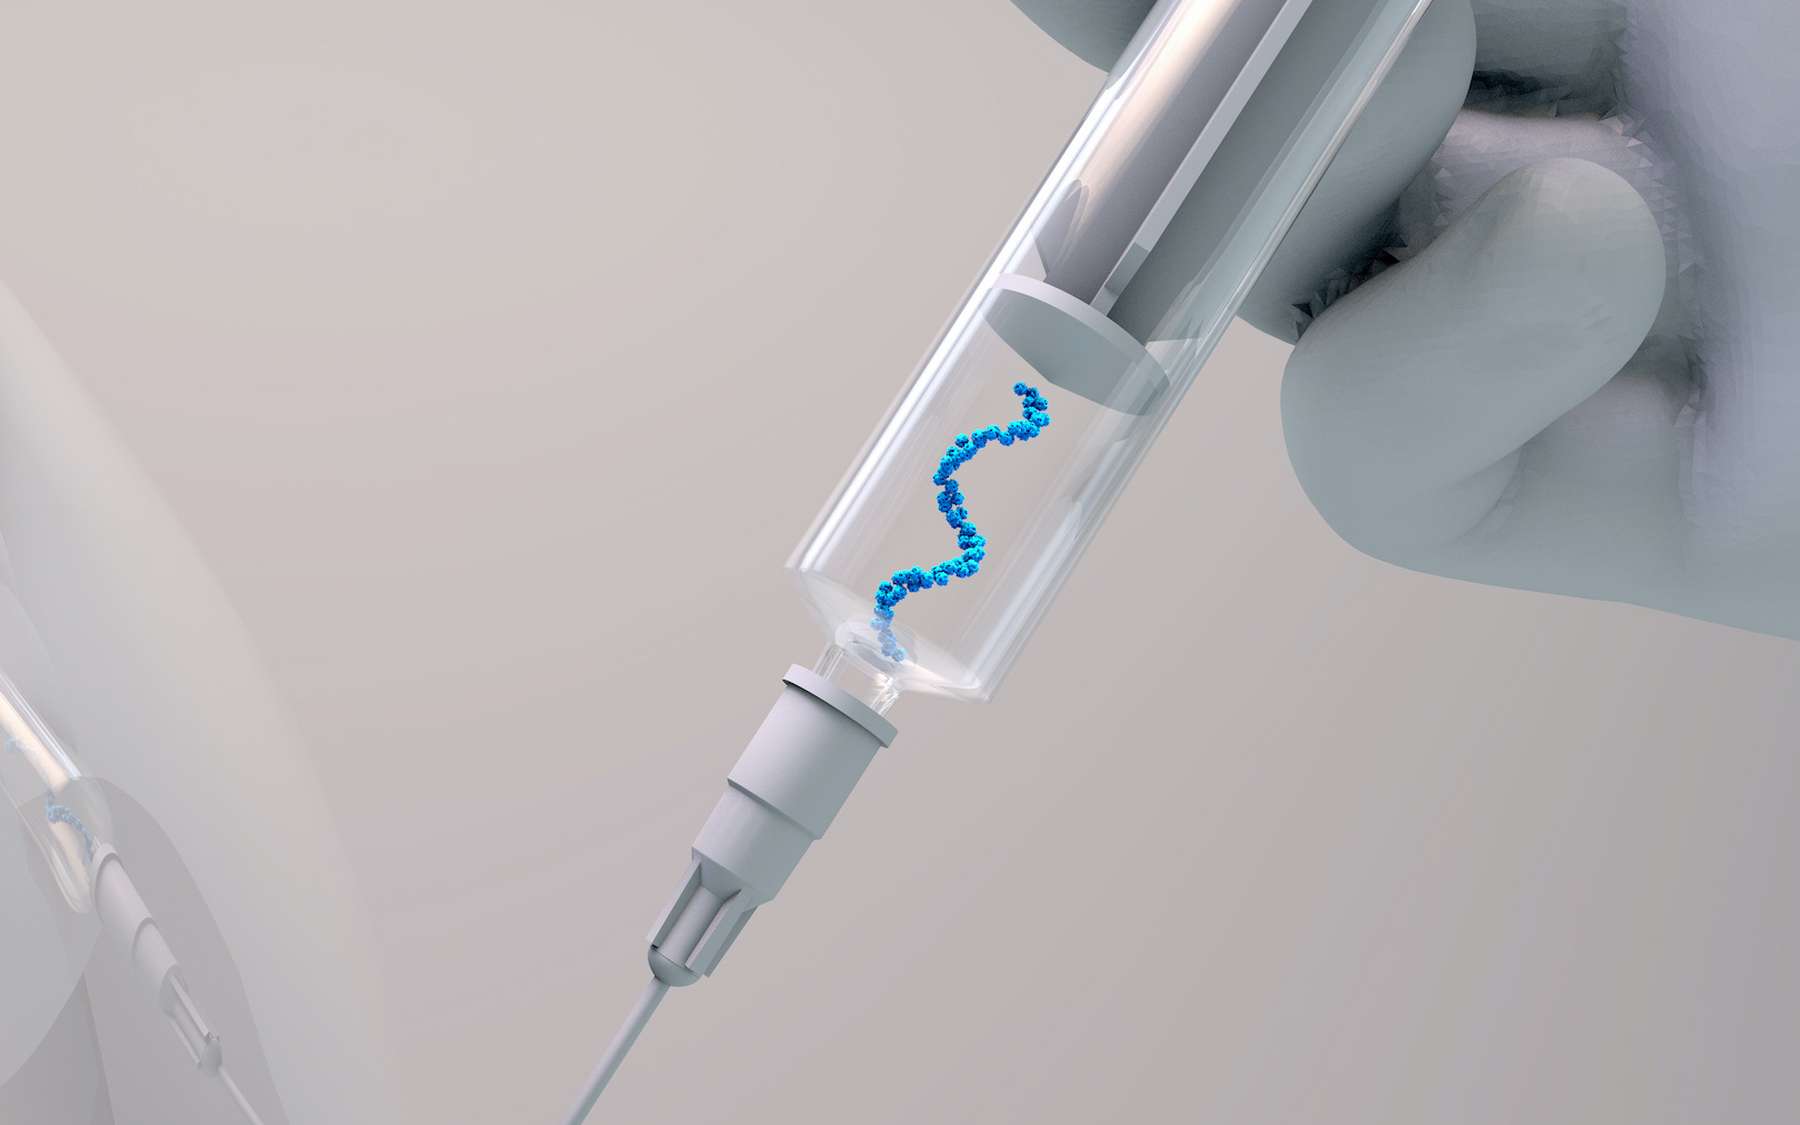 Les seuls vaccins à ARNm disponibles actuellement sur le marché sont ceux contre le SARS-CoV-2. © © Design Cells, Adobe Stock